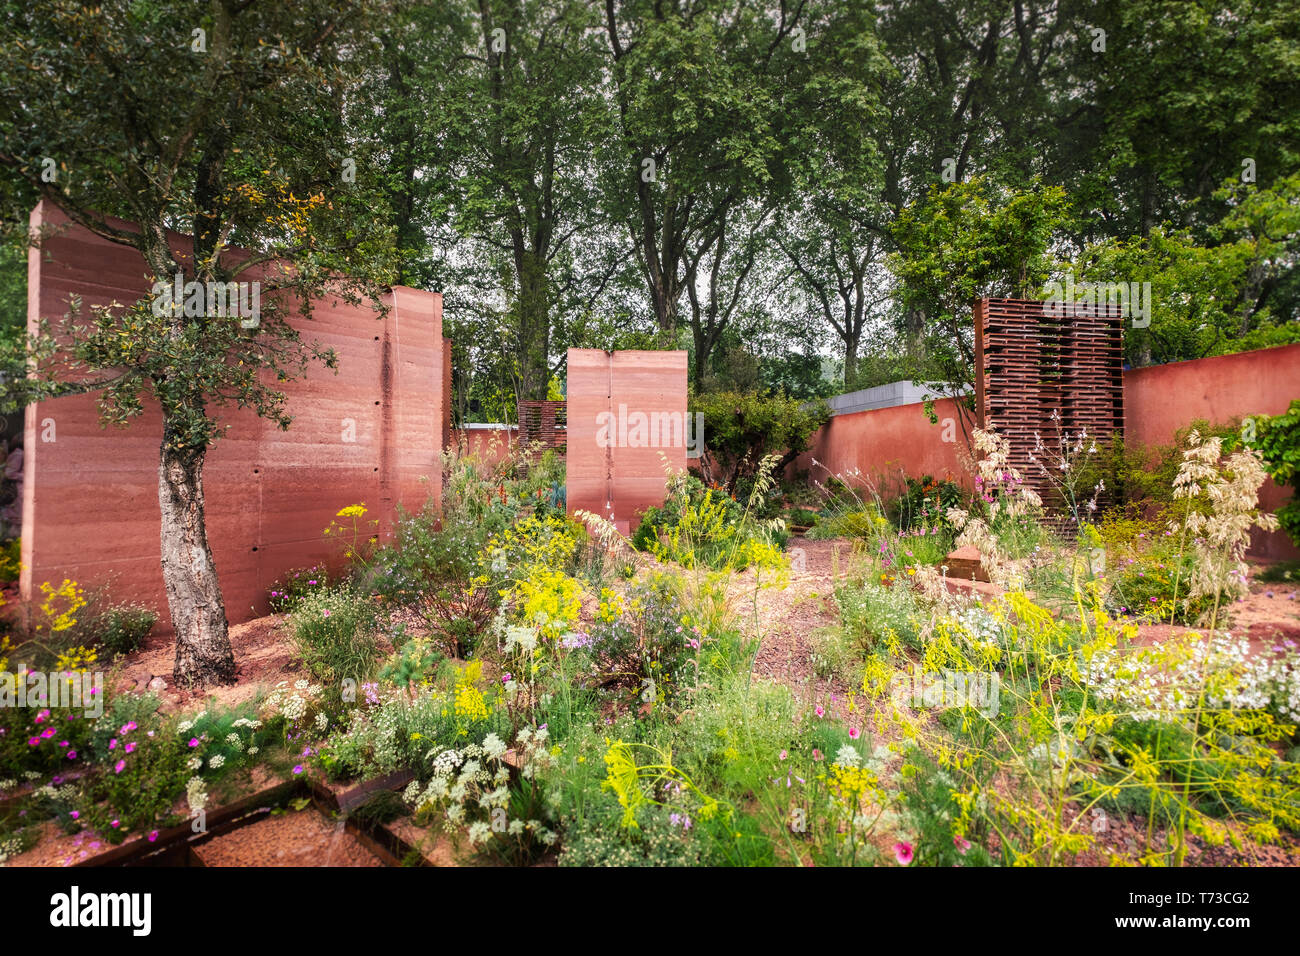 Die M&G Garten von Sarah Preis konzipiert, auf der Chelsea Flower Show 2018, London, UK. Stockfoto